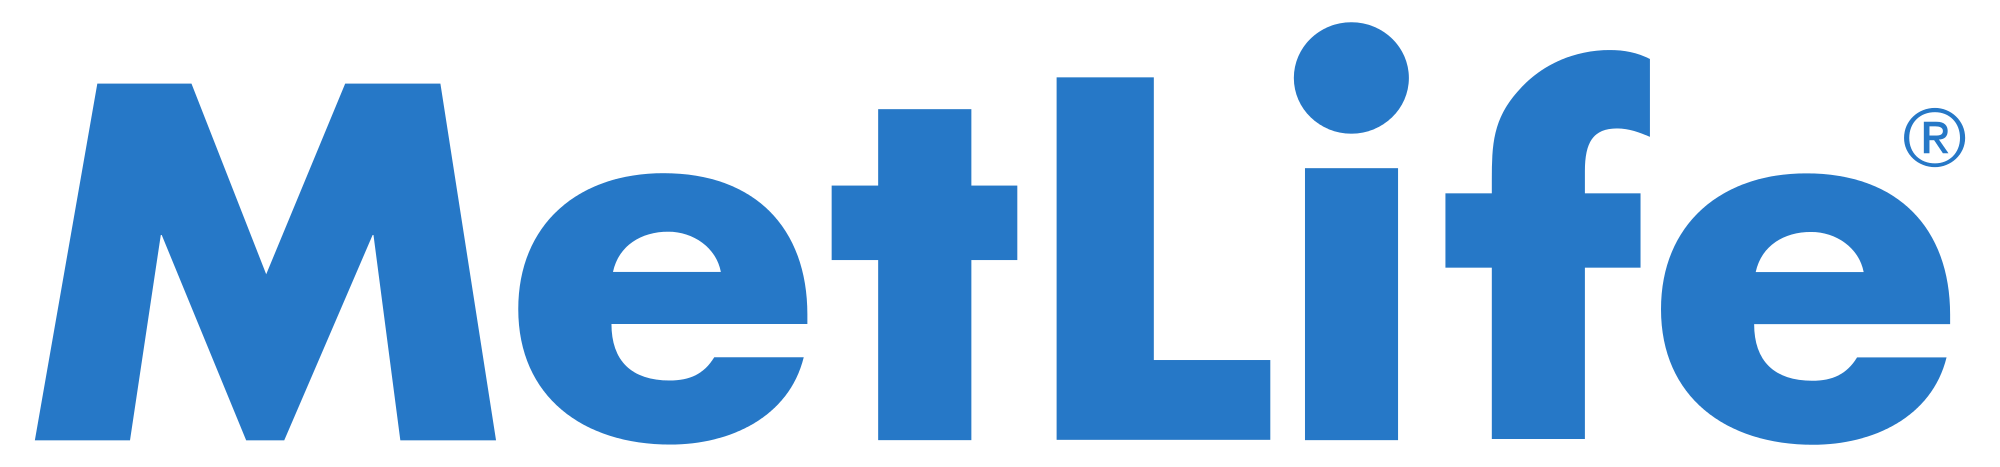 2000px-MetLife_Logo.svg.png